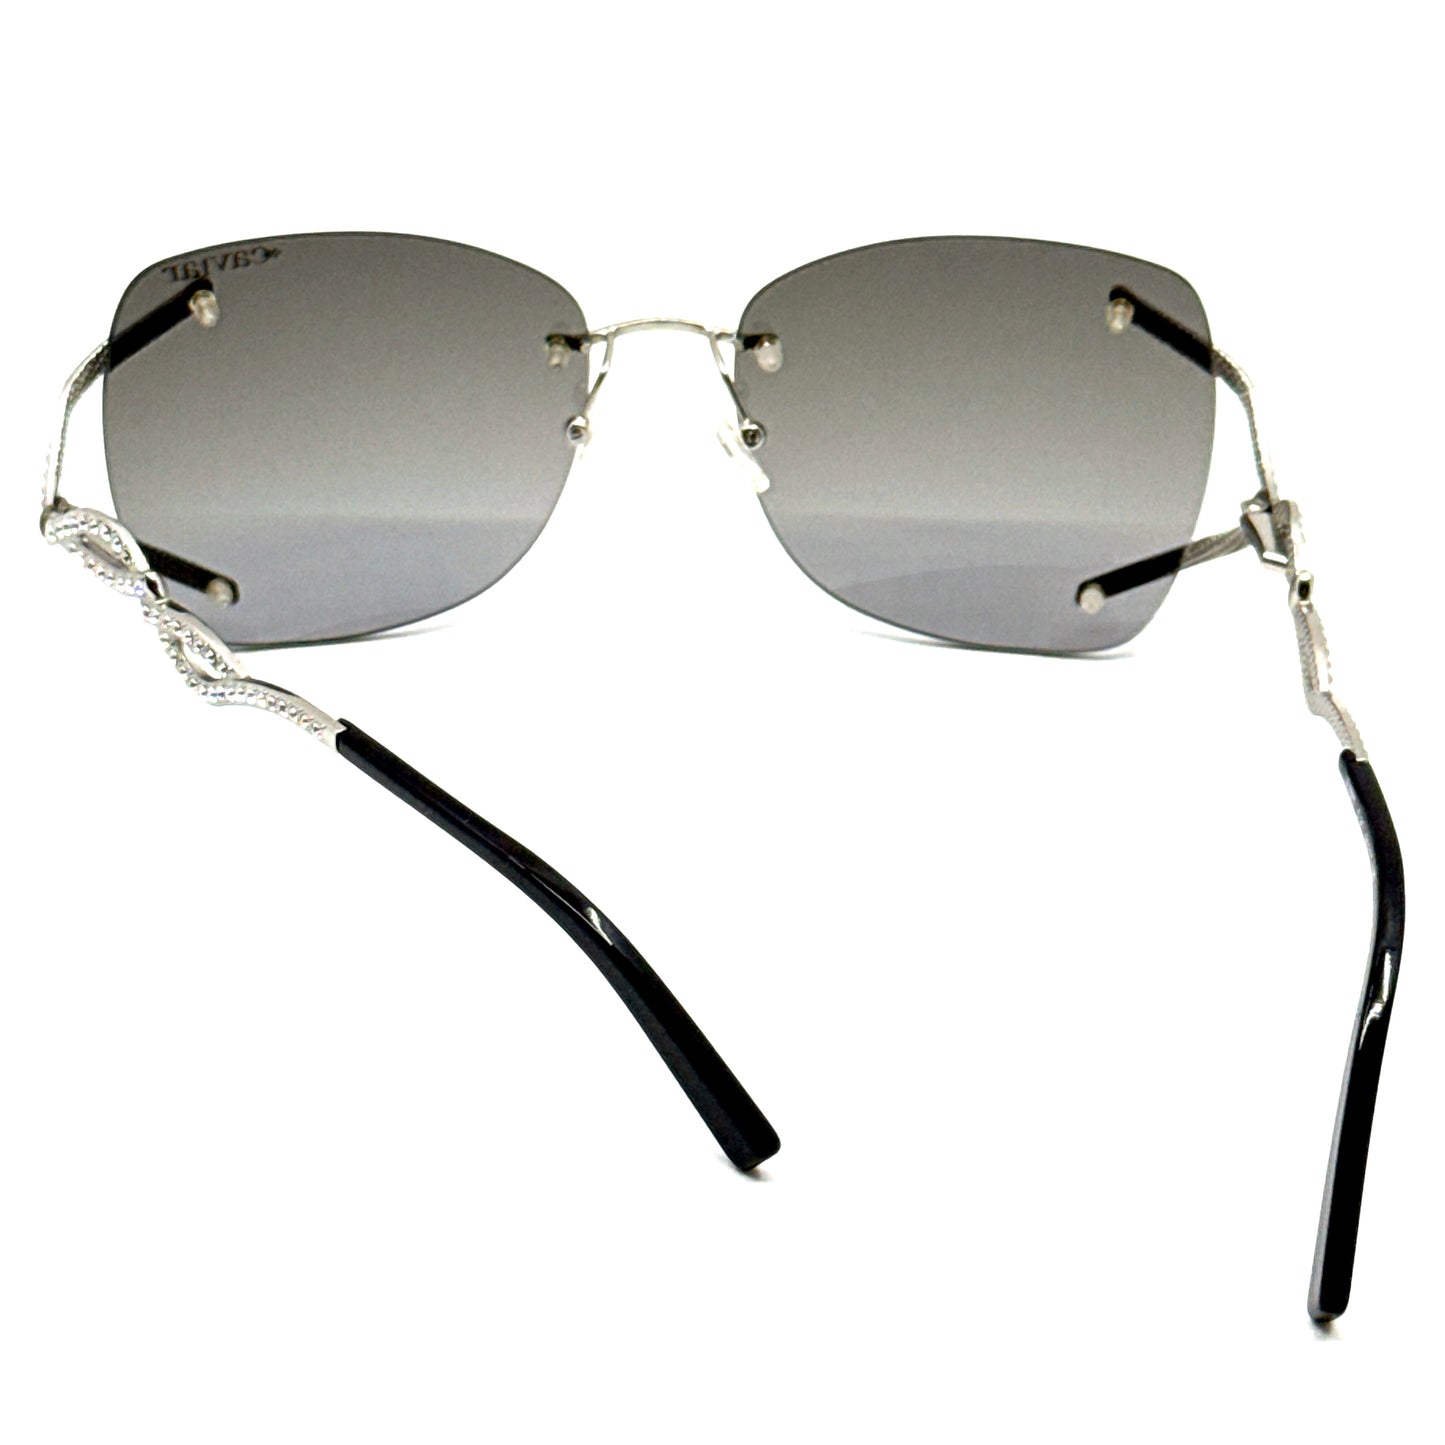 CAVIAR Sunglasses M6882 C35